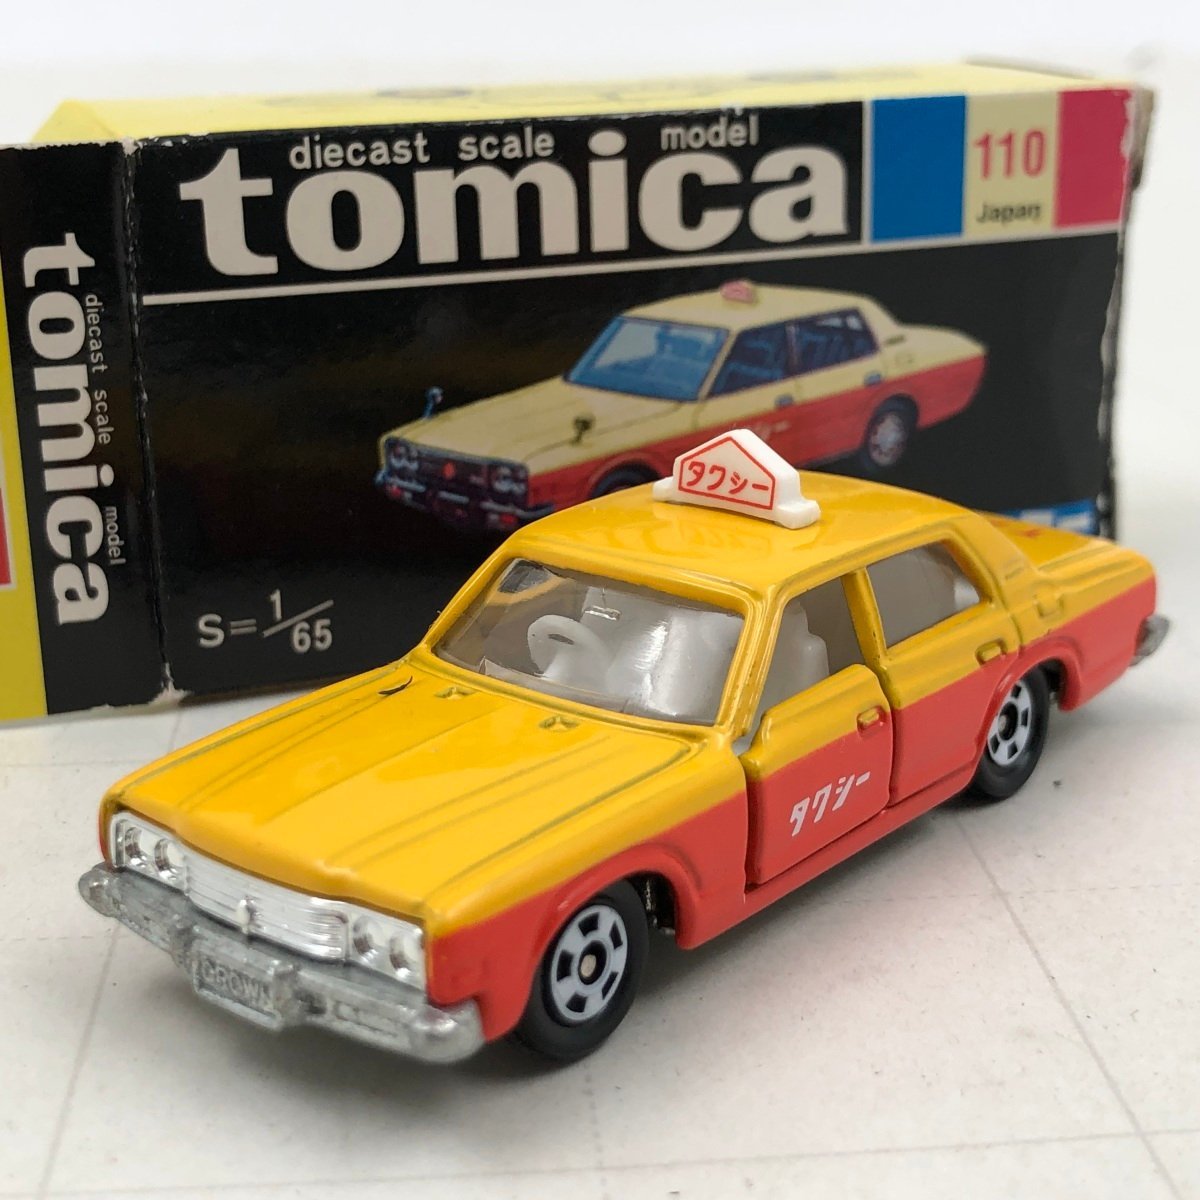 中古品 トミー トミカ 1/65 トヨタ クラウン タクシー TOMY tomica